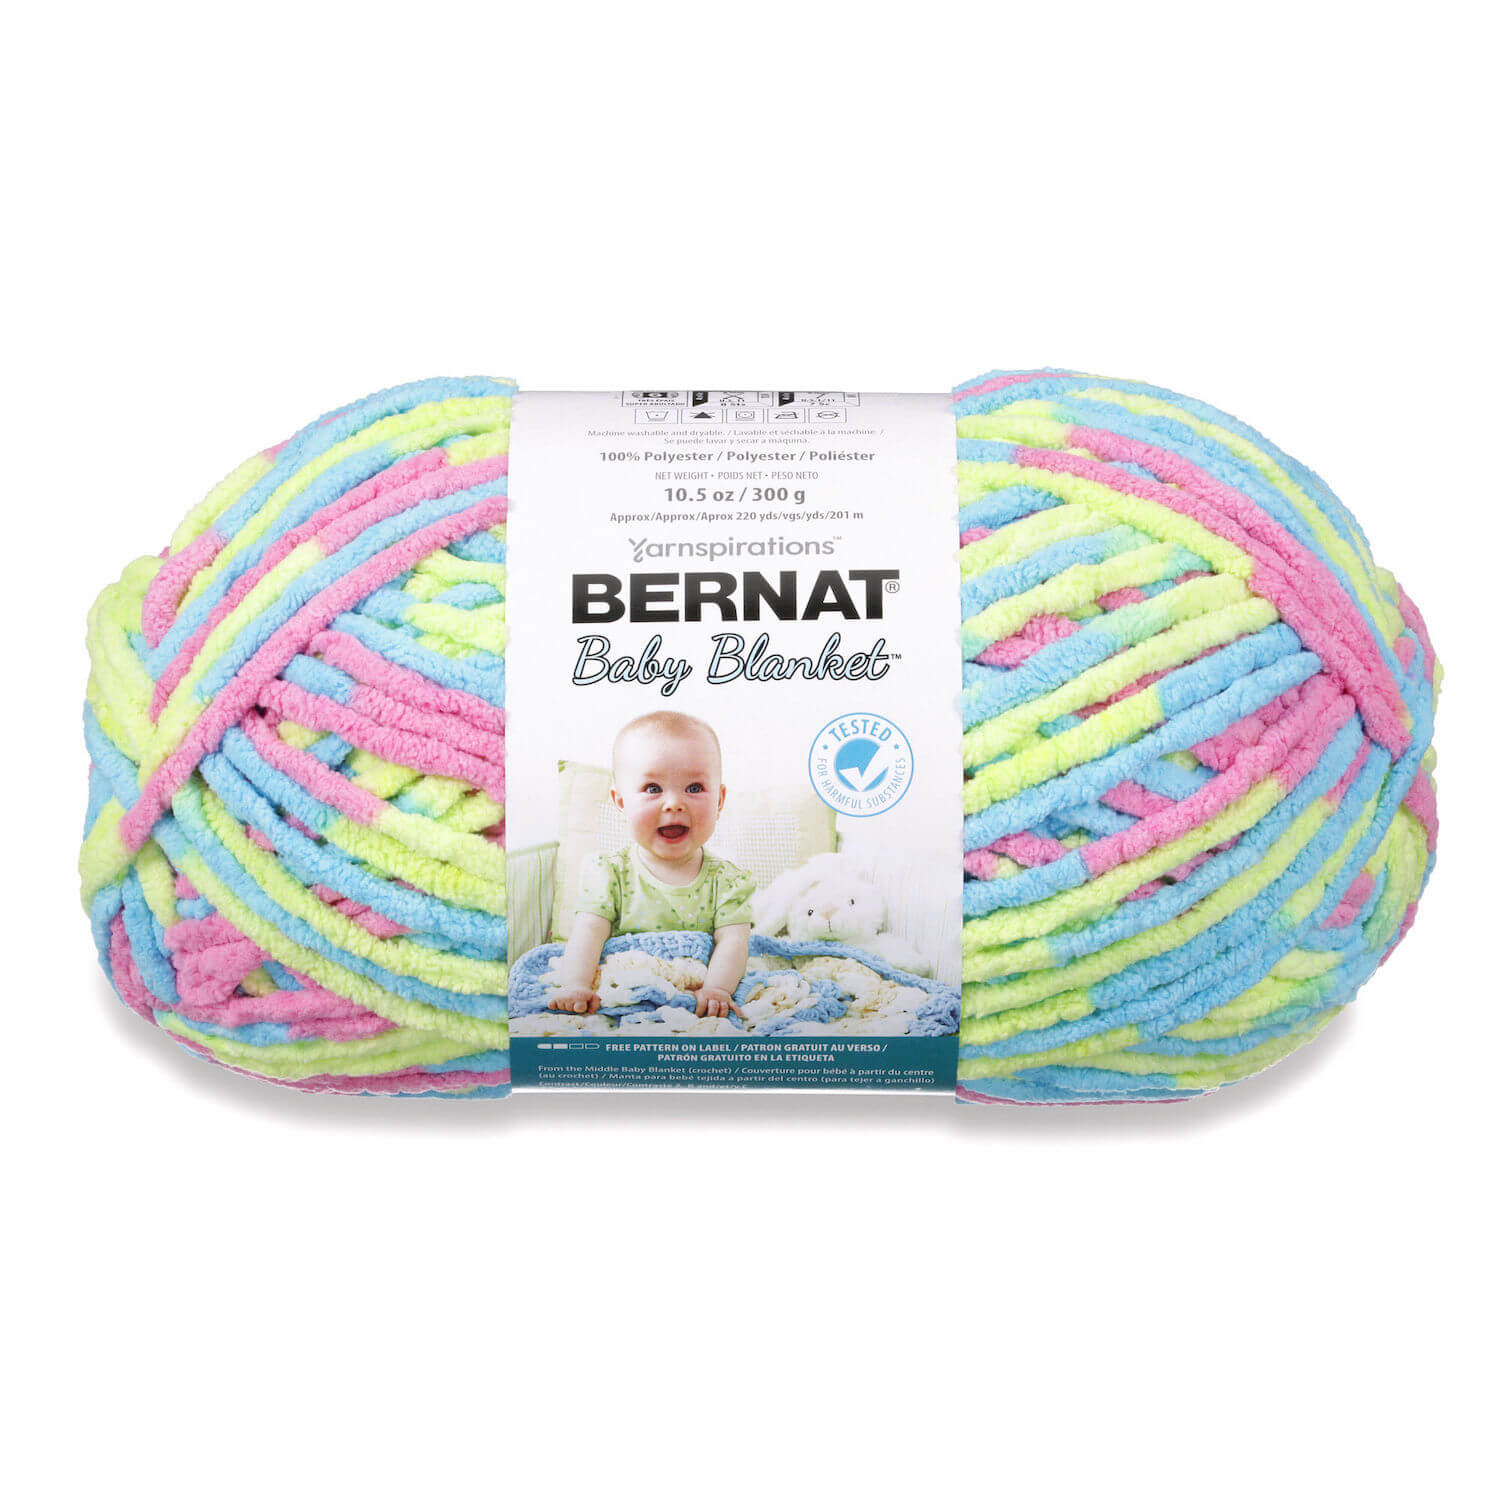 Bernat Crochet Basket Pattern